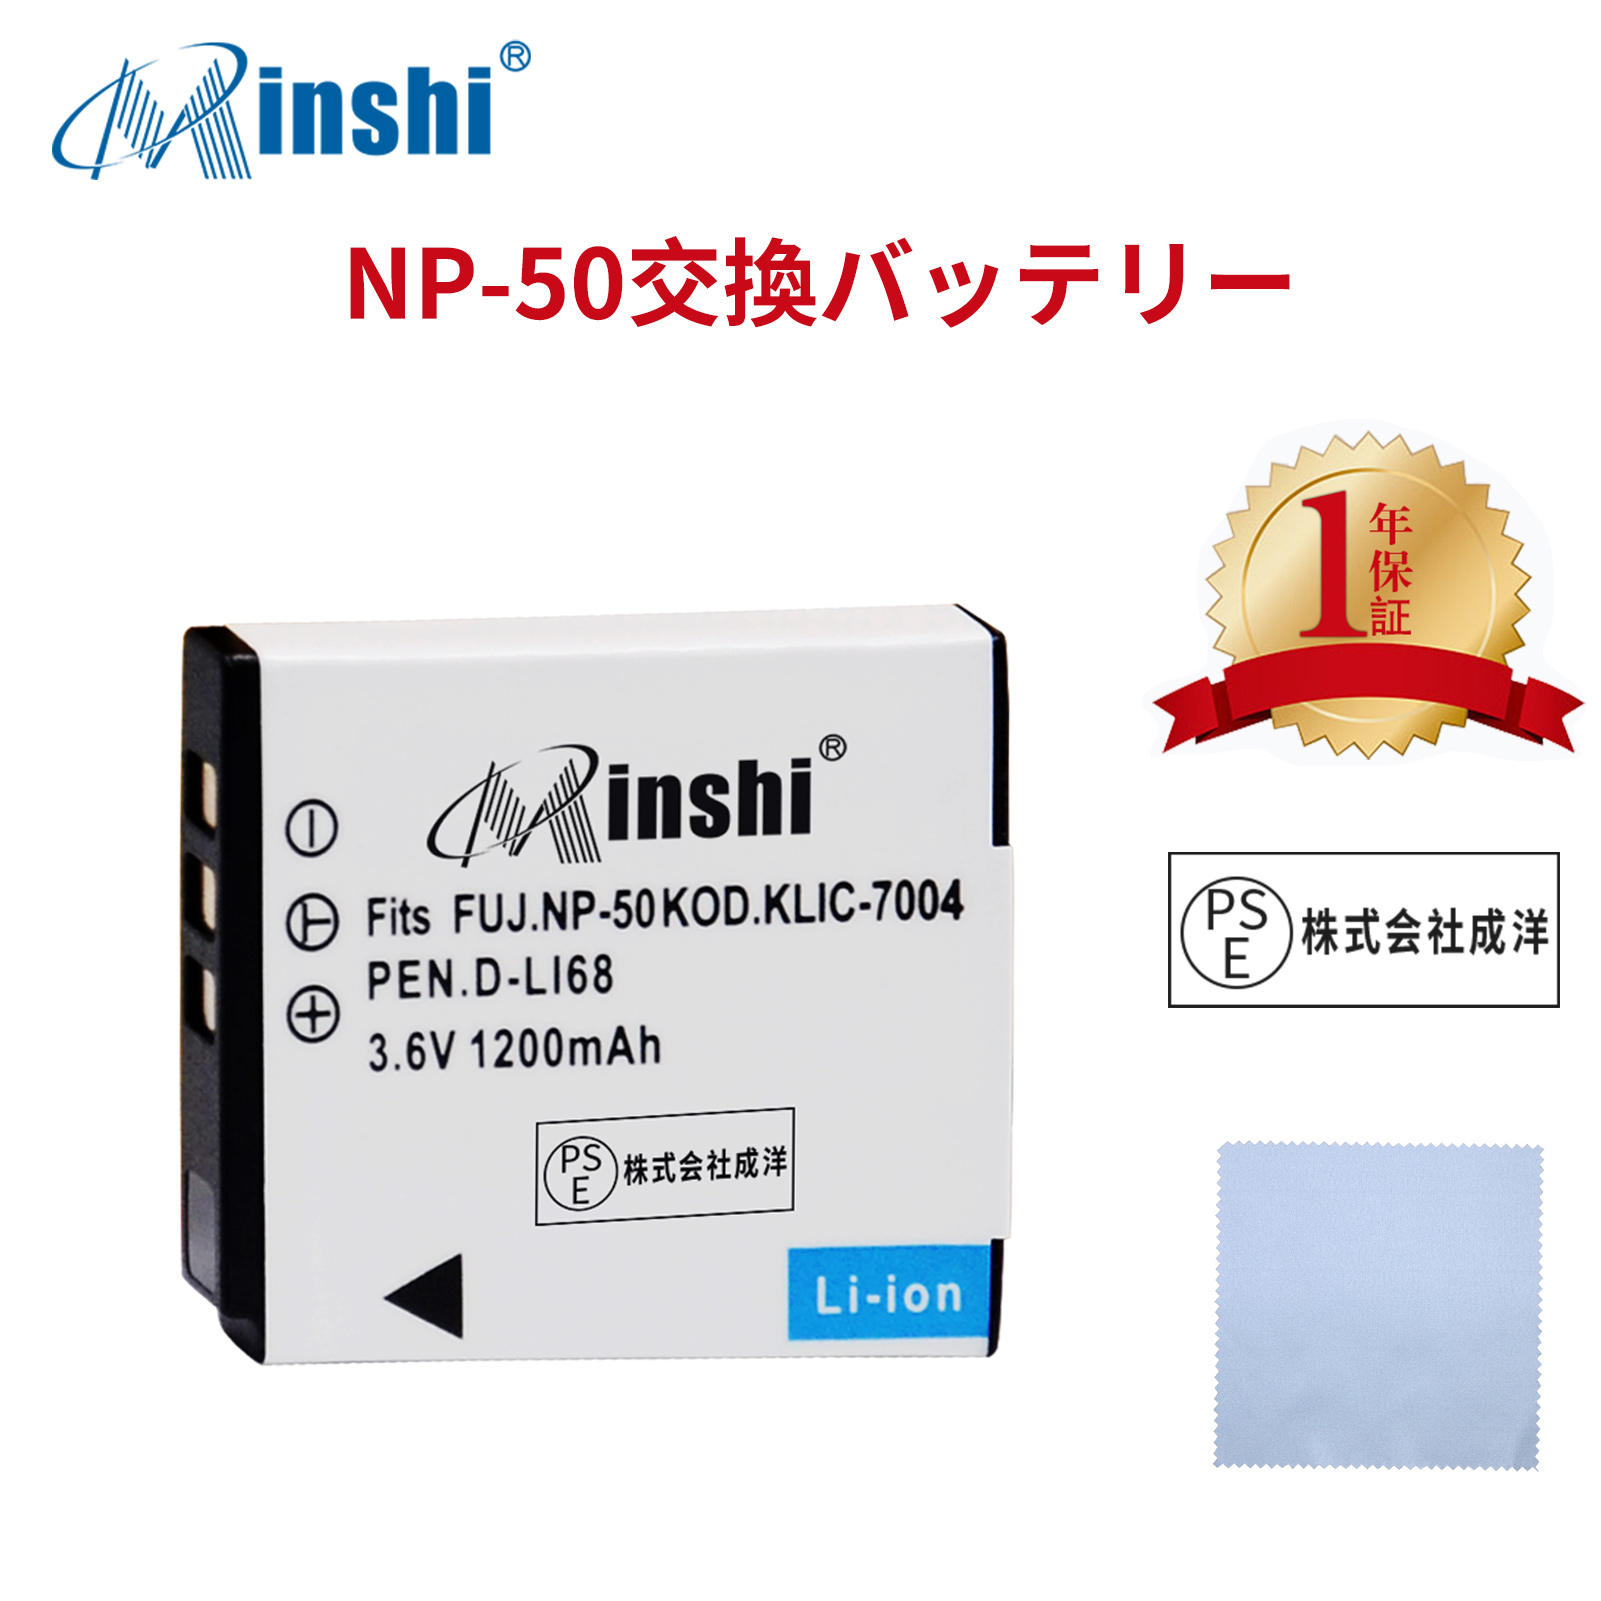 【クロス付き】minshi FUJIFILM FinePix F770EXR NP-50A対応 NP-50  1200mAh 高品質交換用バッテリー